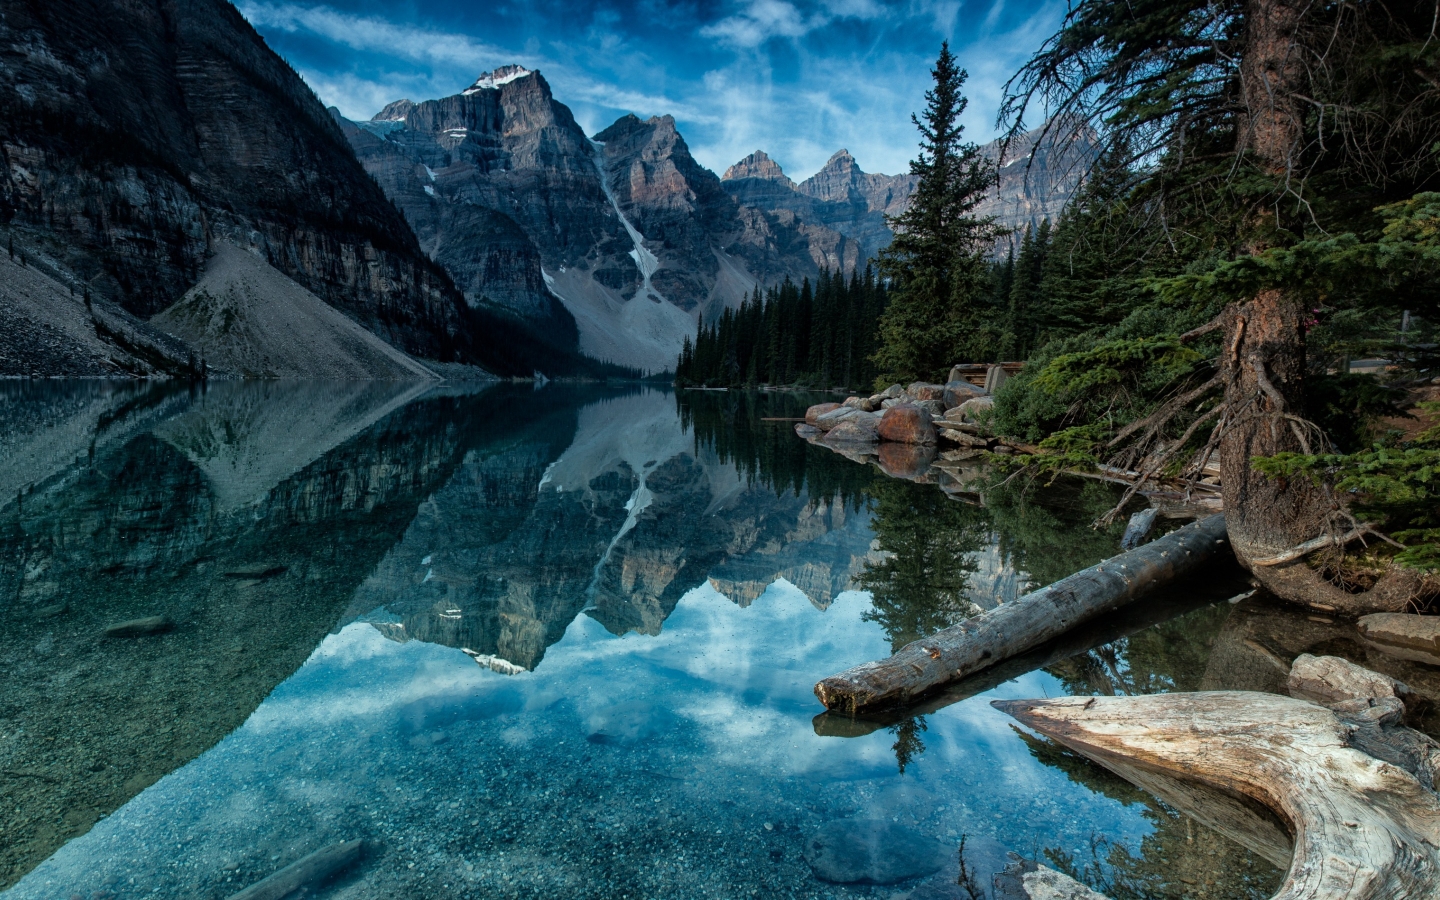 Moraine Lake Alberta Canada for 1440 x 900 widescreen resolution